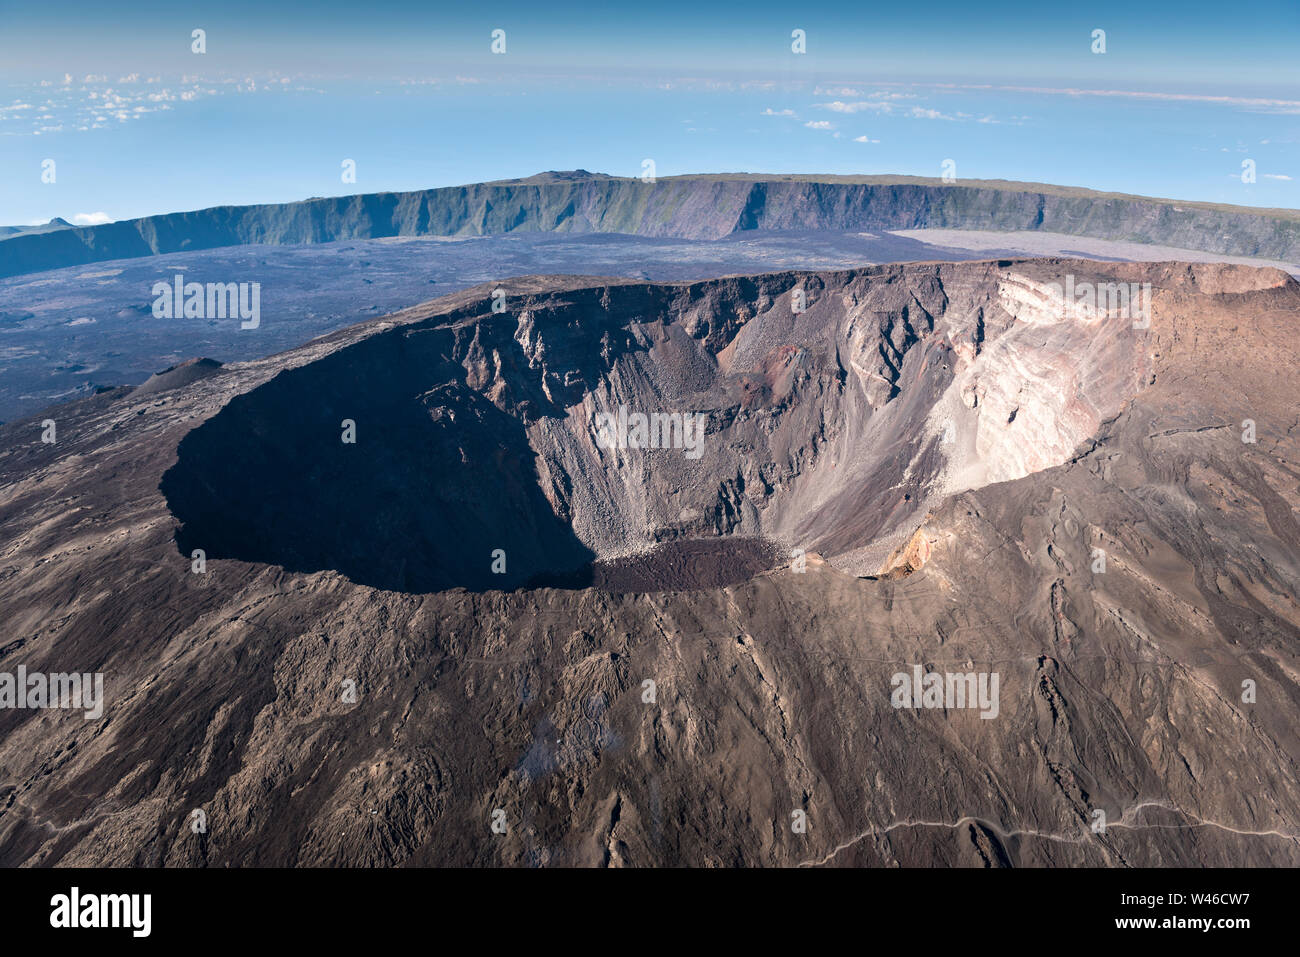 La mattina presto vista aerea del cratere e cono del Piton de la Fournaise, uno dei vulcani più attivi al mondo. La Reunion. Foto Stock